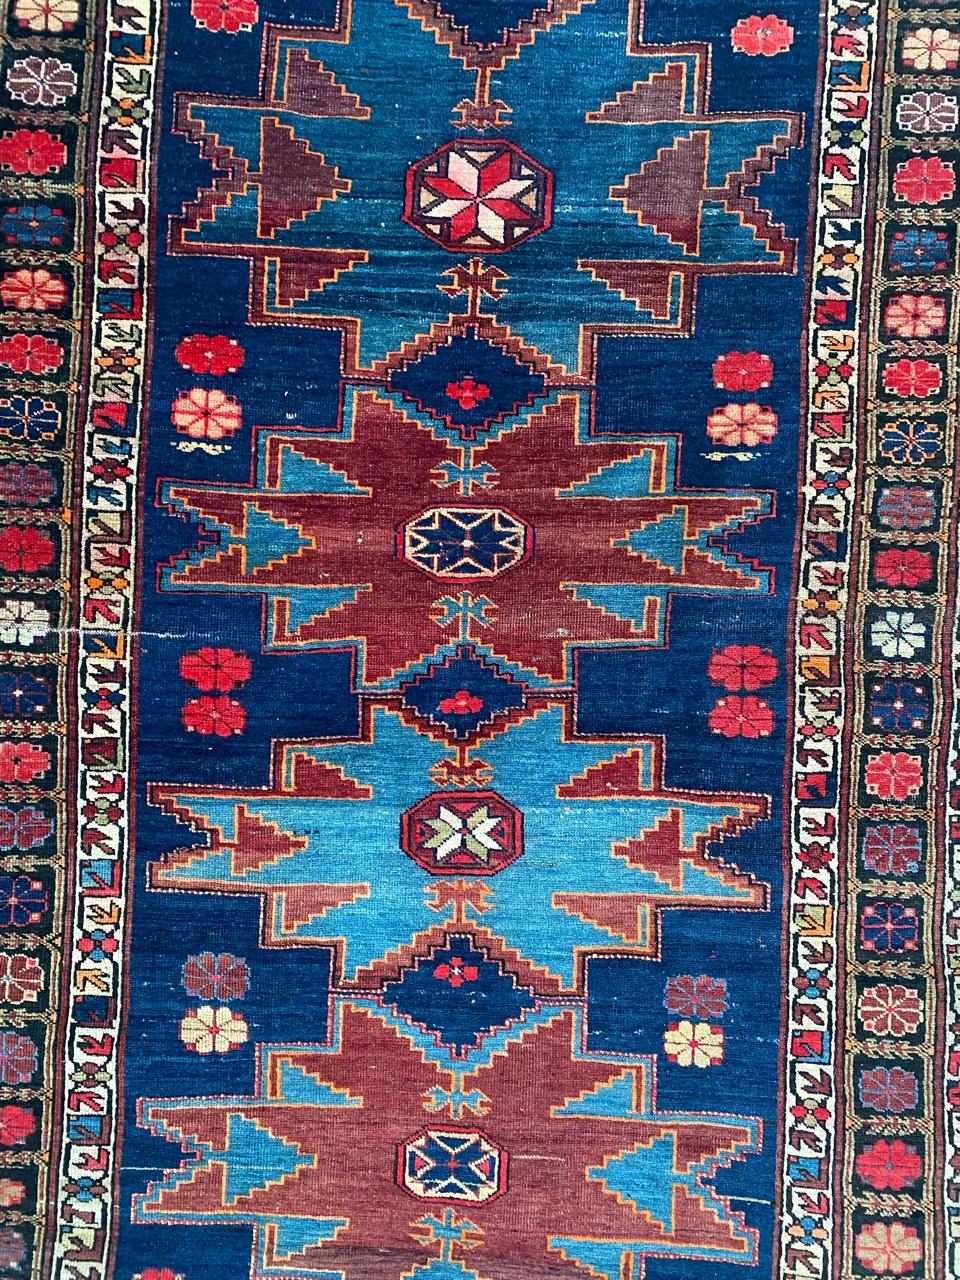 Entdecken Sie die exquisite Handwerkskunst dieses kaukasischen Schirwan-Teppichs aus dem frühen 20. Jahrhundert. Dieser Teppich mit seinem fesselnden geometrischen Muster und den atemberaubenden natürlichen Farben ist ein Zeugnis für die sorgfältige